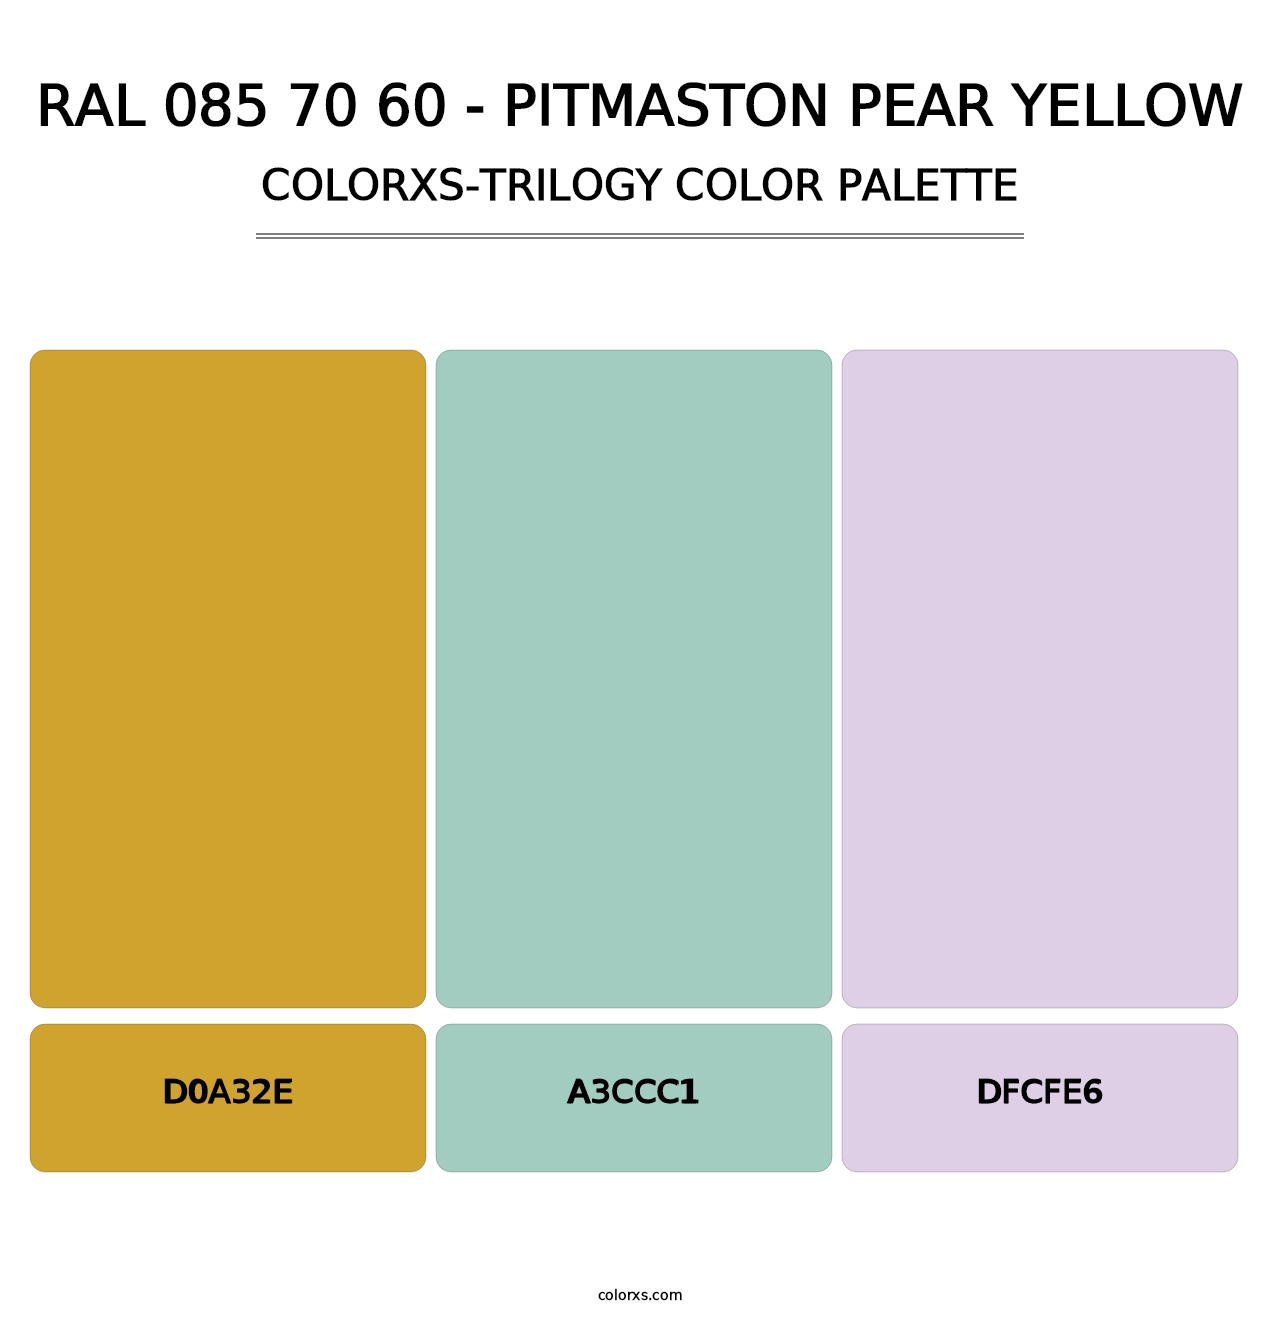 RAL 085 70 60 - Pitmaston Pear Yellow - Colorxs Trilogy Palette